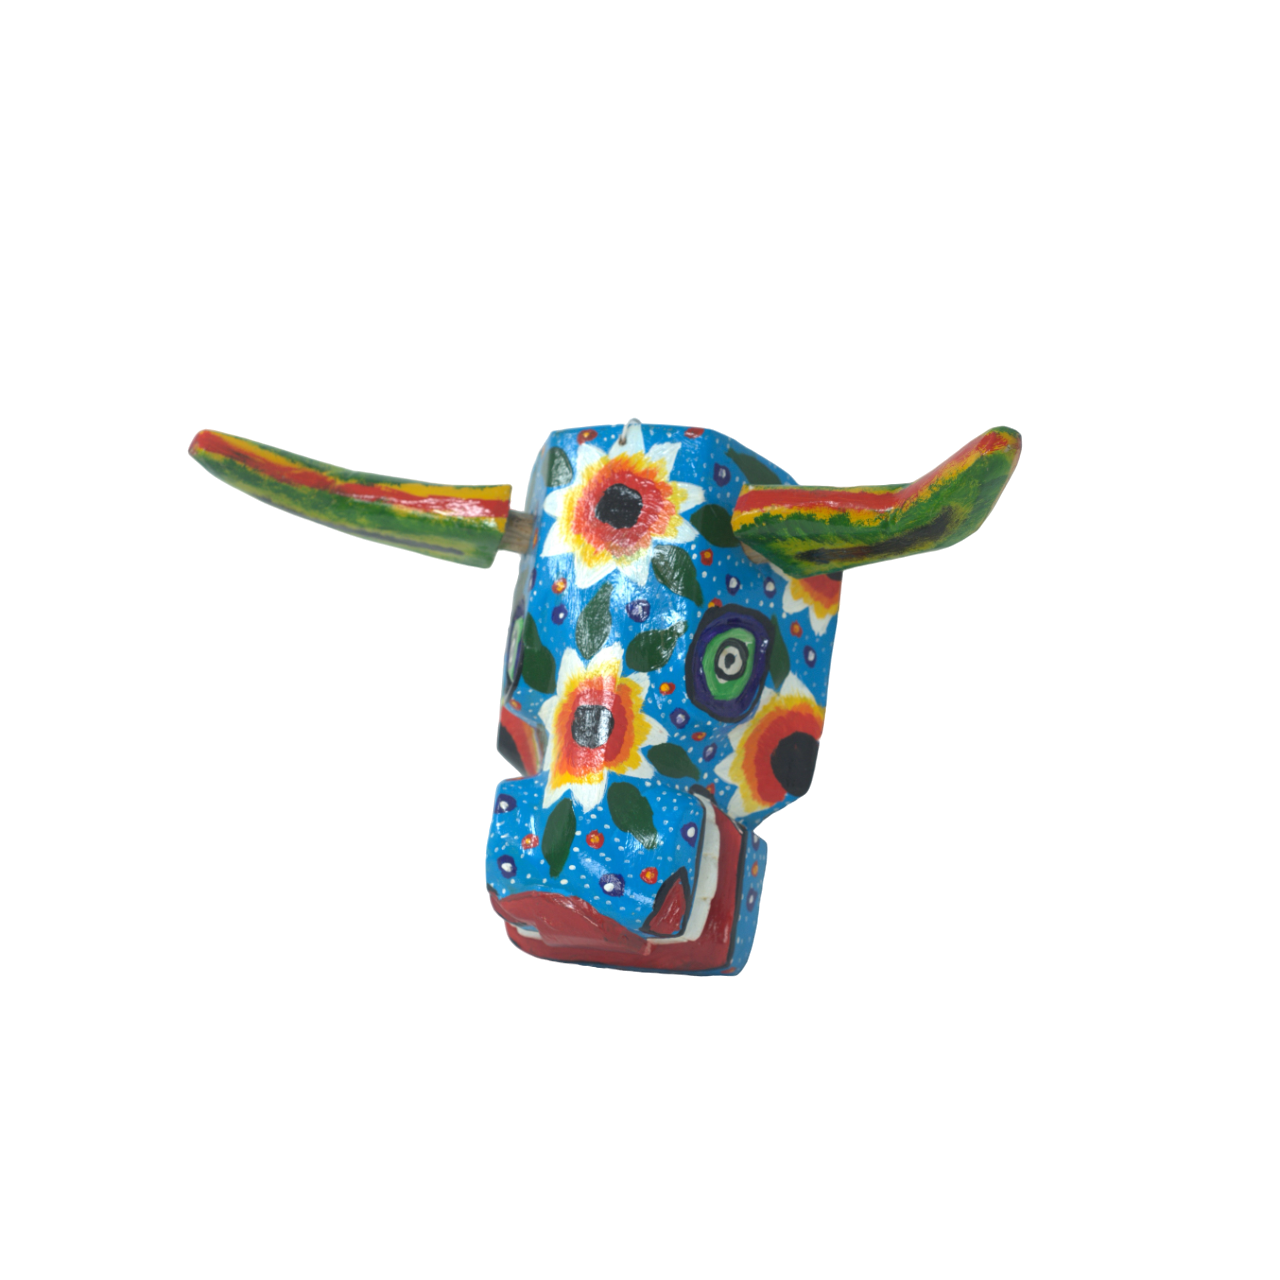 Guatemalan Wooden Mask, Wooden Guatemalan Mask, Wooden Guatemalan Folk Art, Wooden Mask, Traditional Wooden Mask, Traditional Folk Art, Flower Decor, Bull Head Flower Mask, Wooden Bull Head